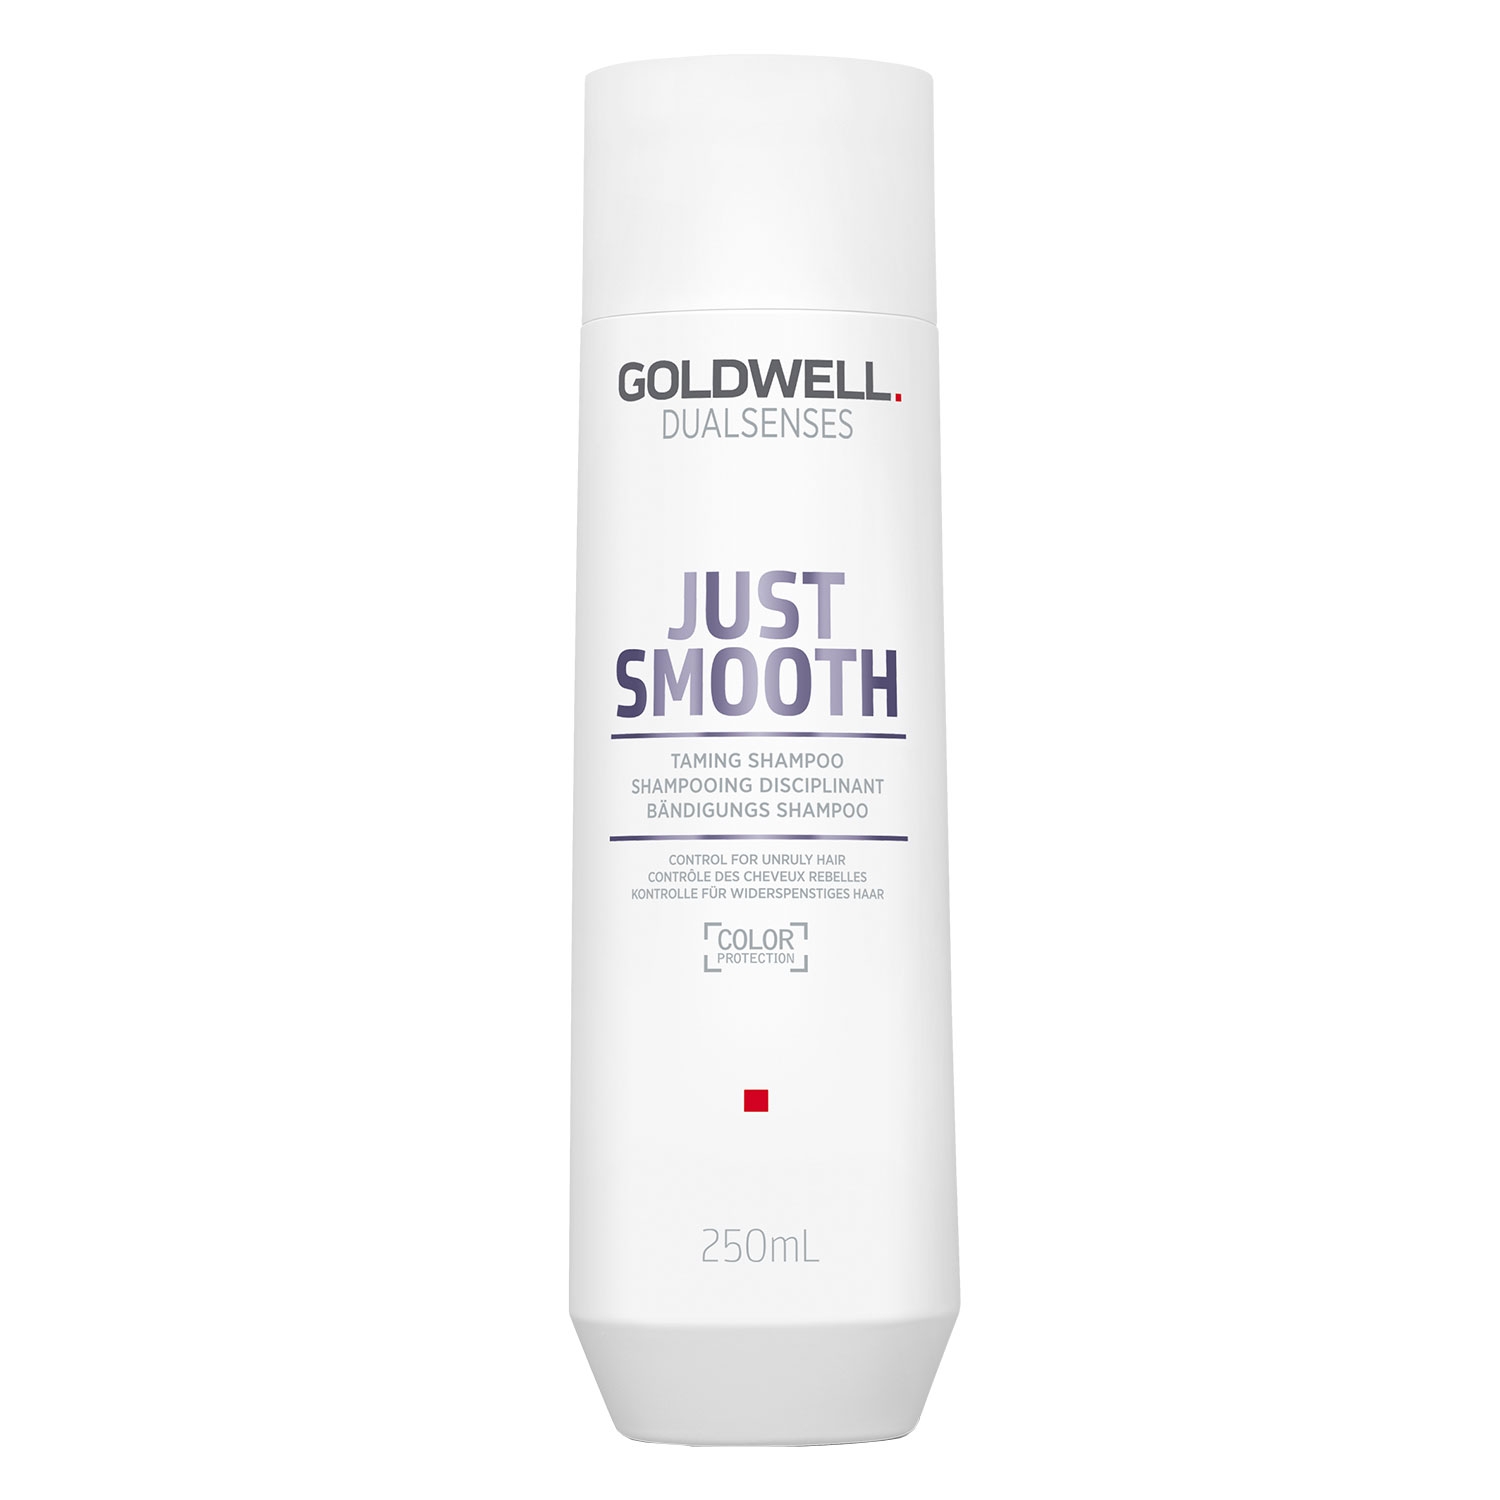 Produktbild von Dualsenses Just Smooth - Taming Shampoo